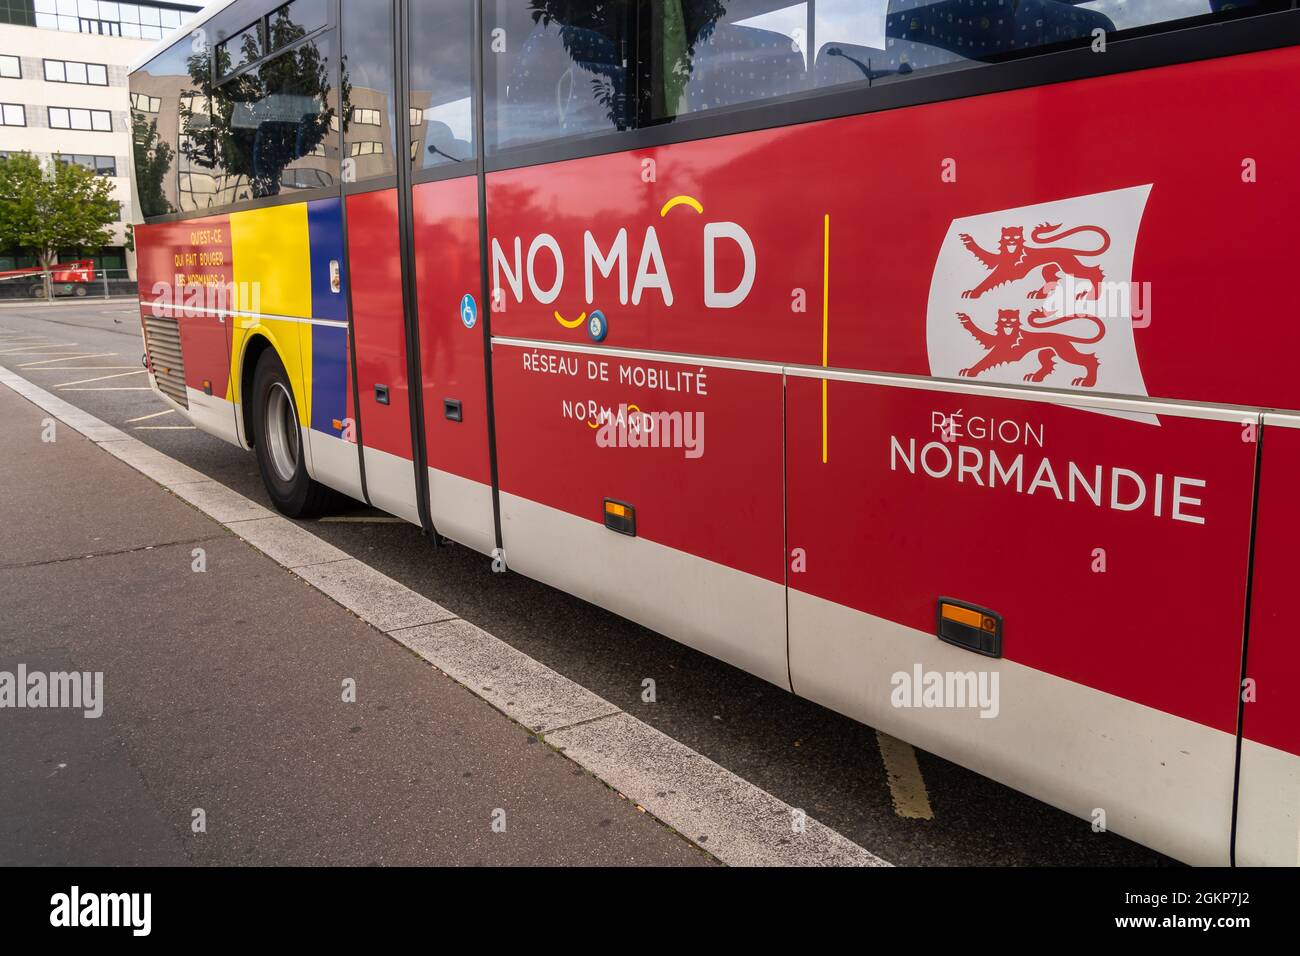 Le Havre, Frankreich - 8. August 2021: NOMAD ist das normannische Mobilitätsnetzwerk, das alle regionalen außerstädtischen und schulischen Verkehrsmittel zusammenführt Stockfoto